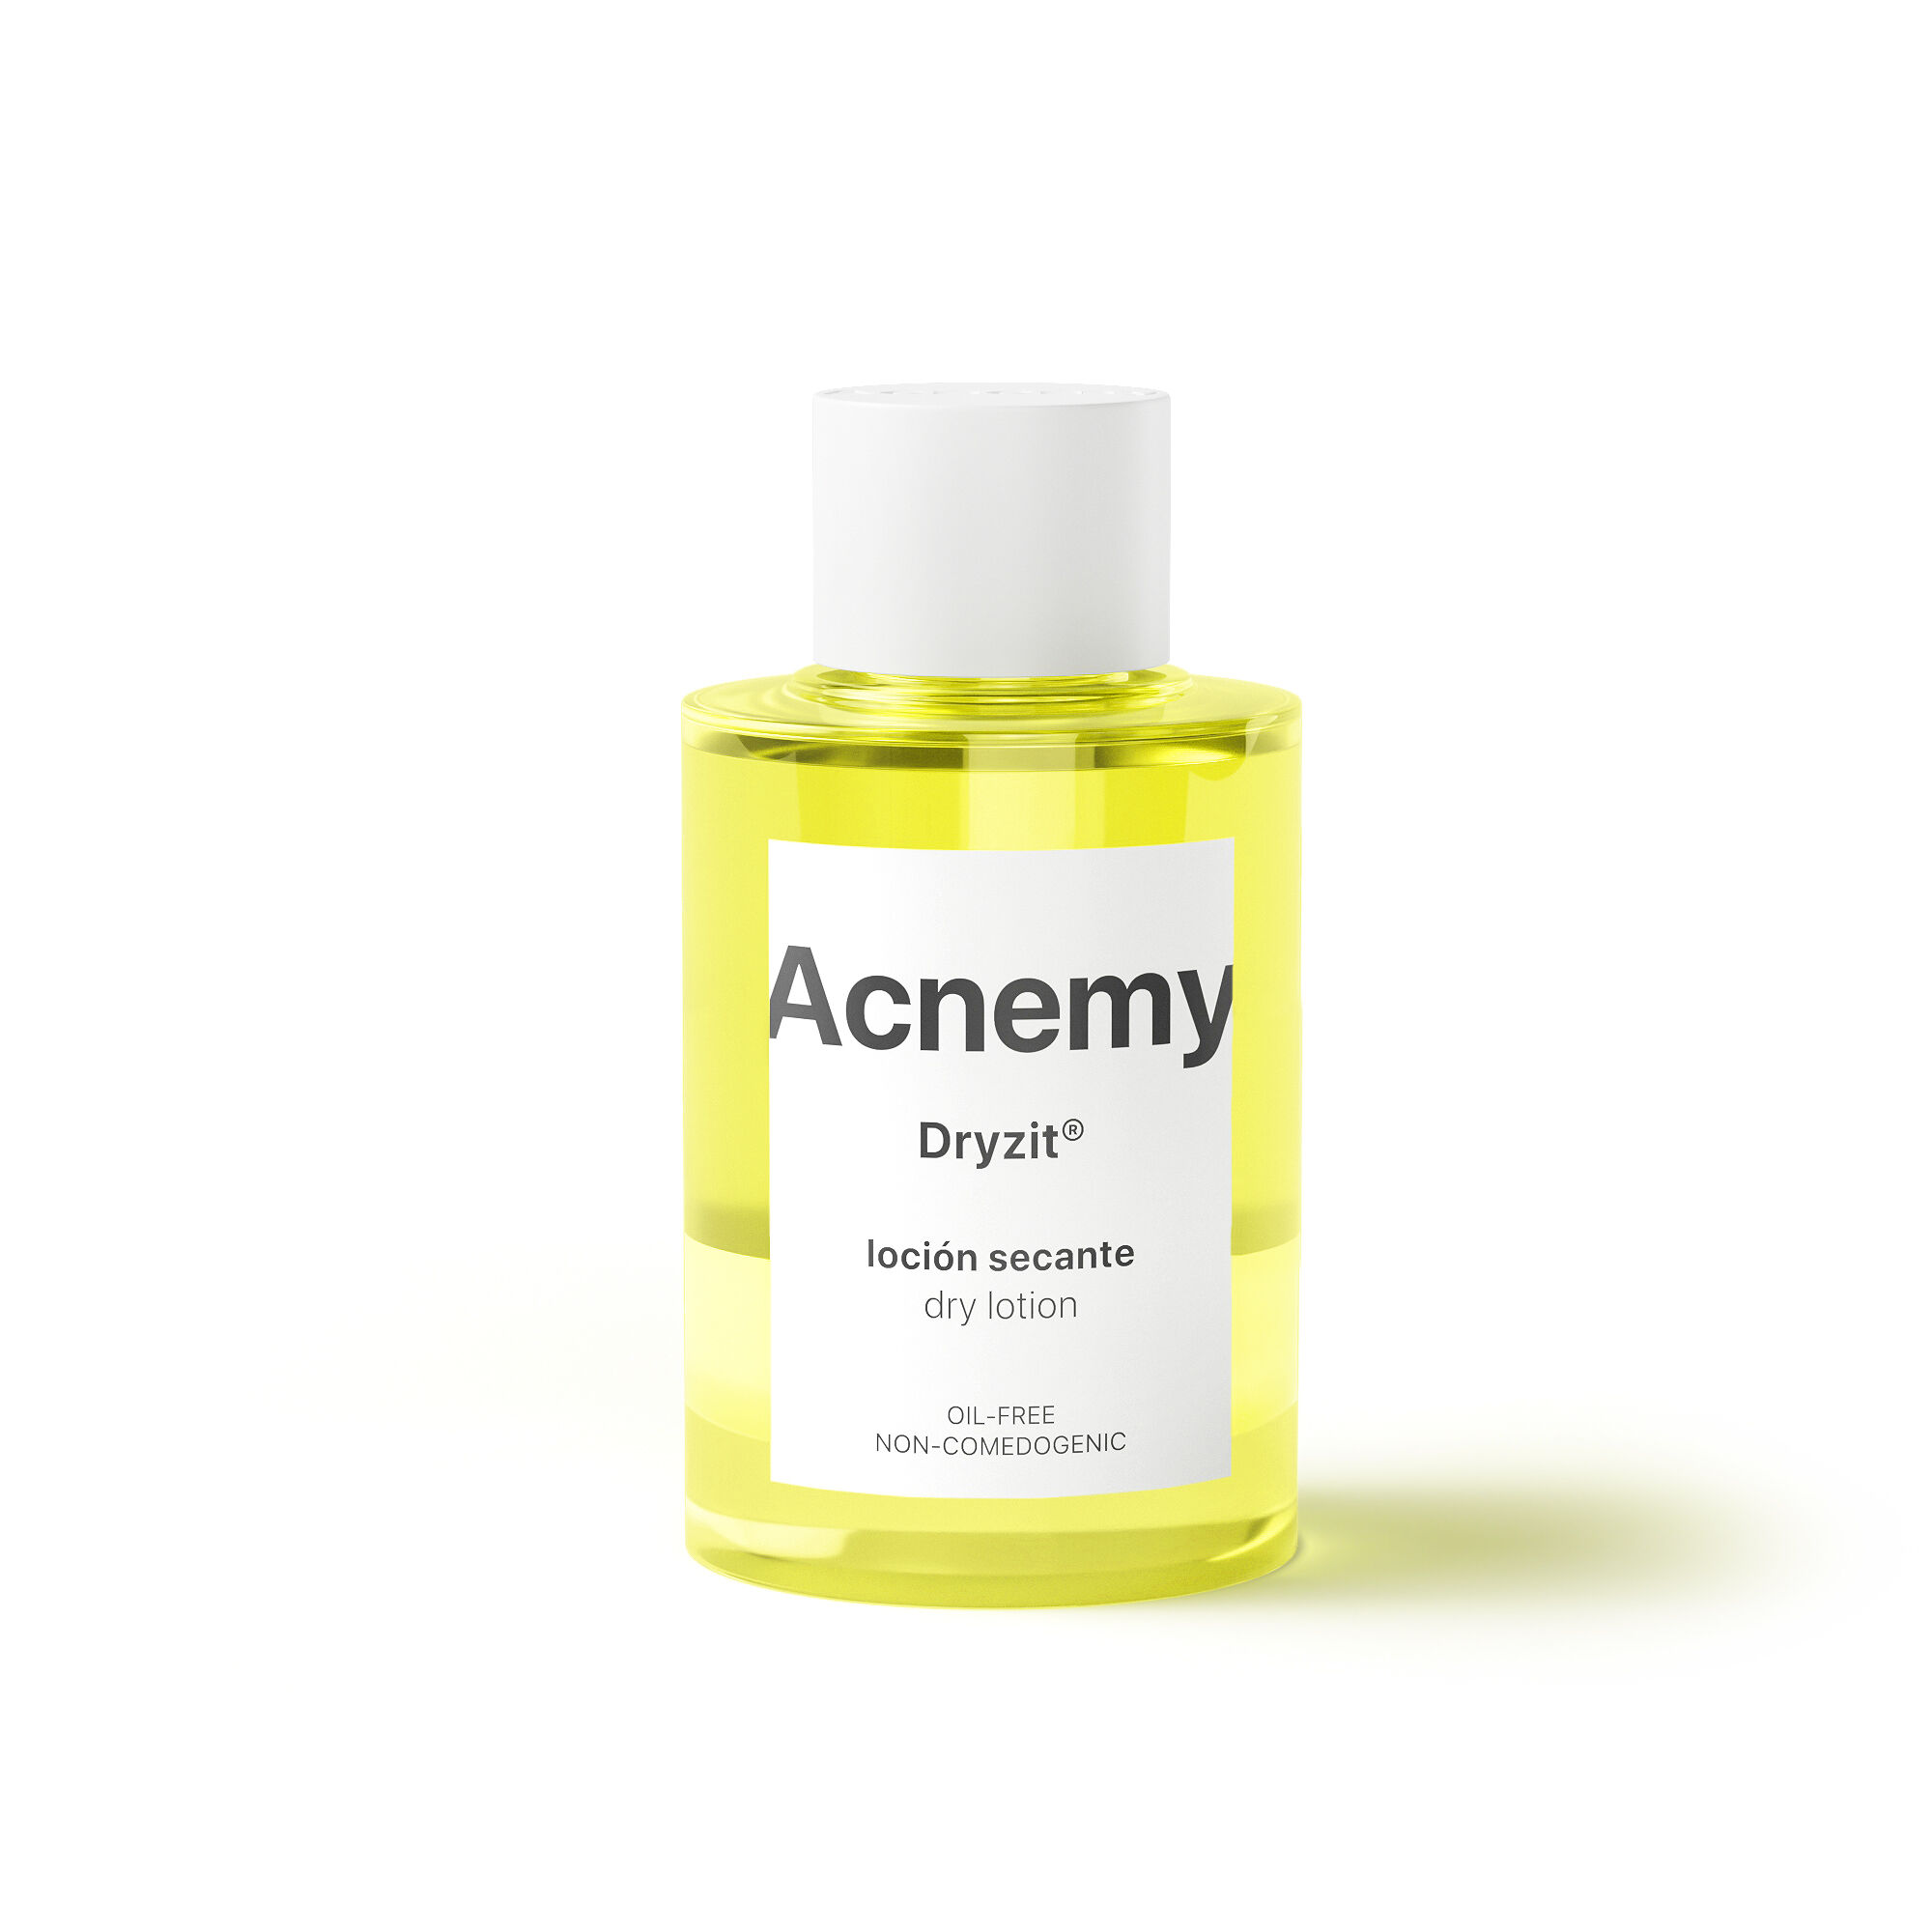 Acnemy Dryzit точечная сыворотка для лица, подсушивающая прыщики, 30 мл